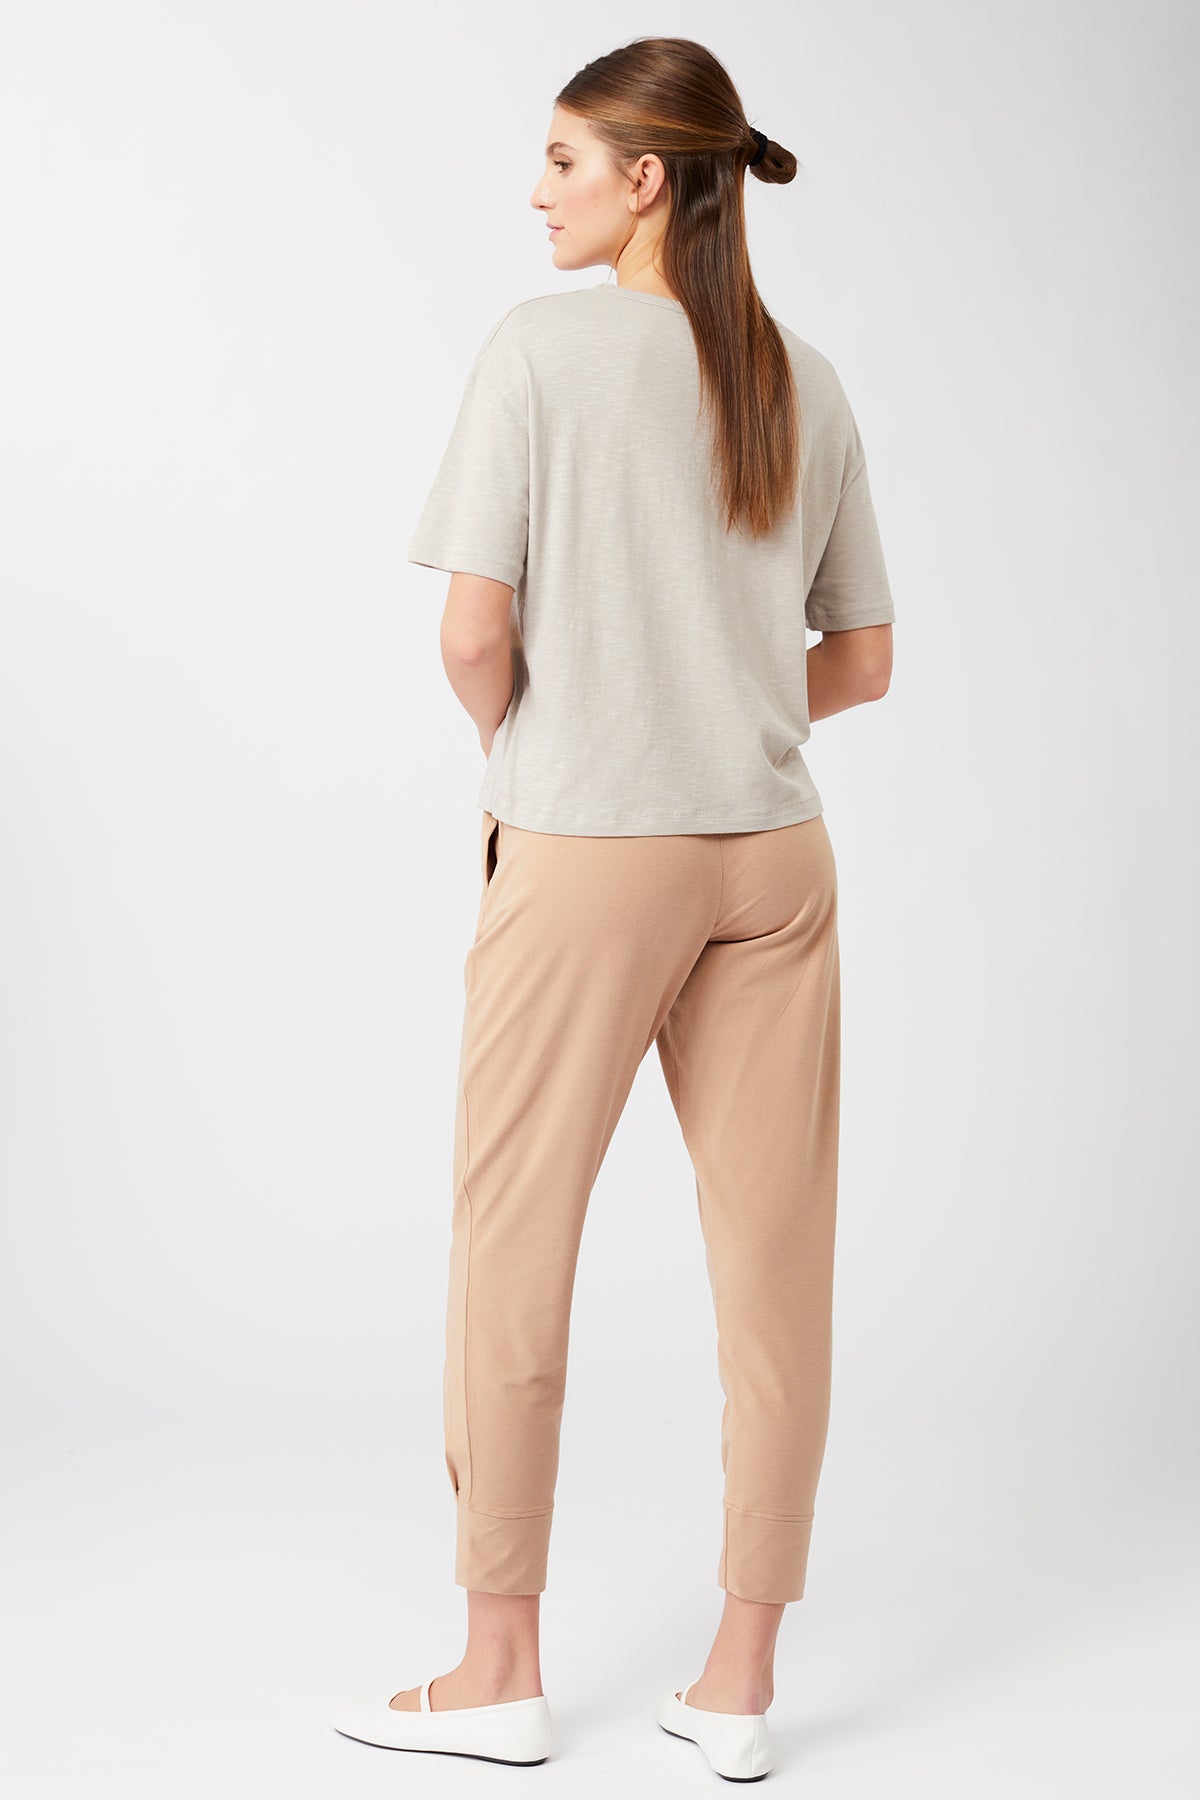 Mandala Yoga Pants Braun Outfit Rückseite - Cuffed Track Pants